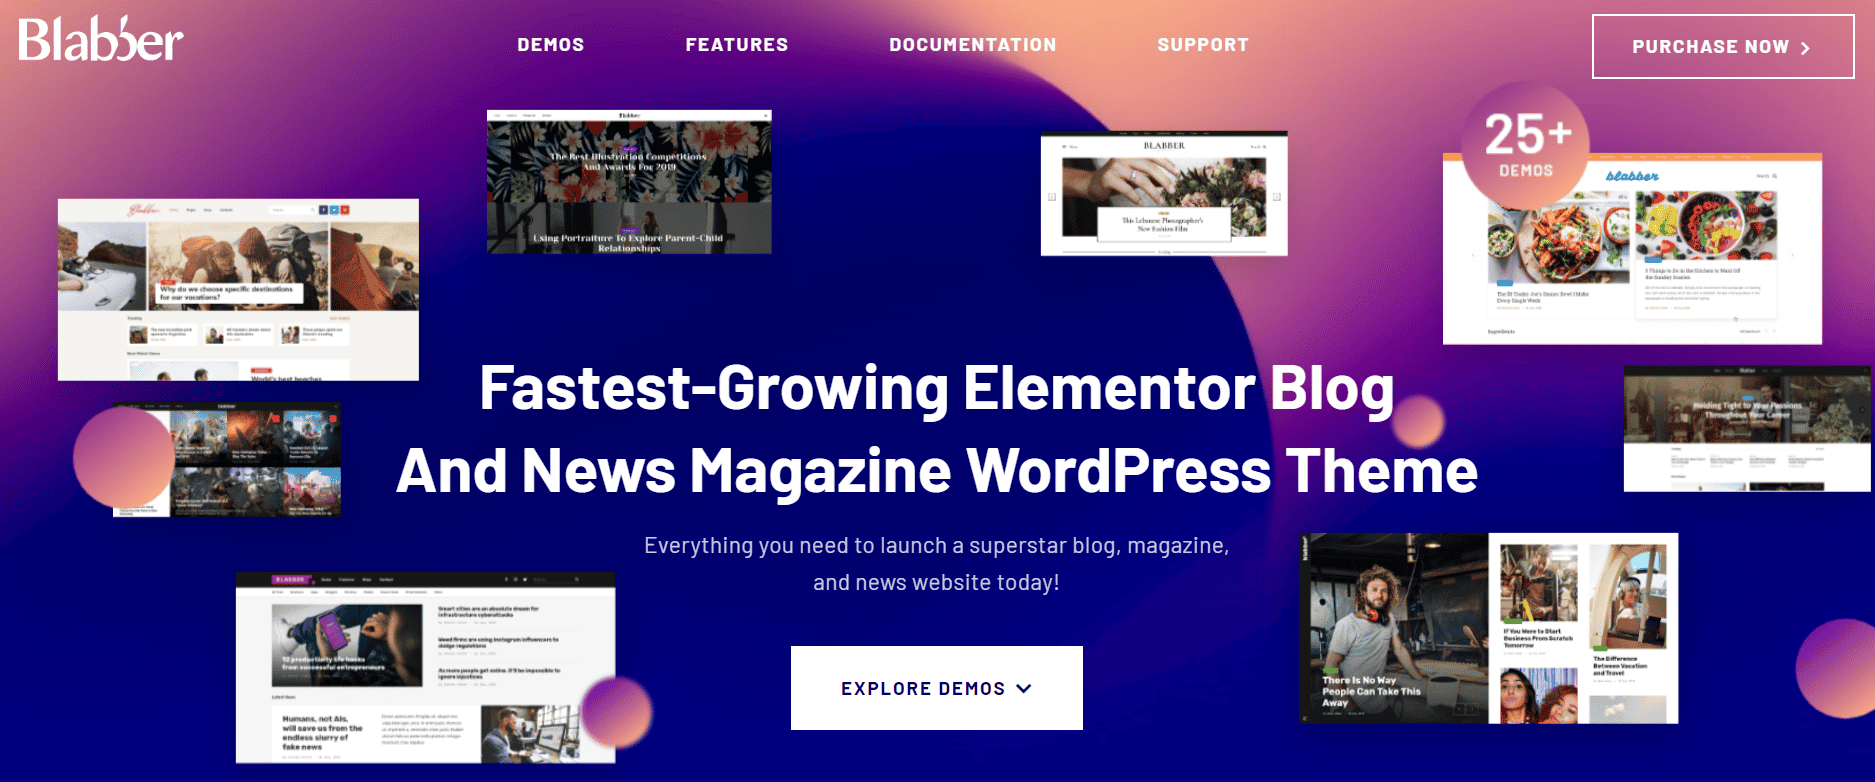 Screenshot van de website voor het Blabber WordPress thema voor affiliates.